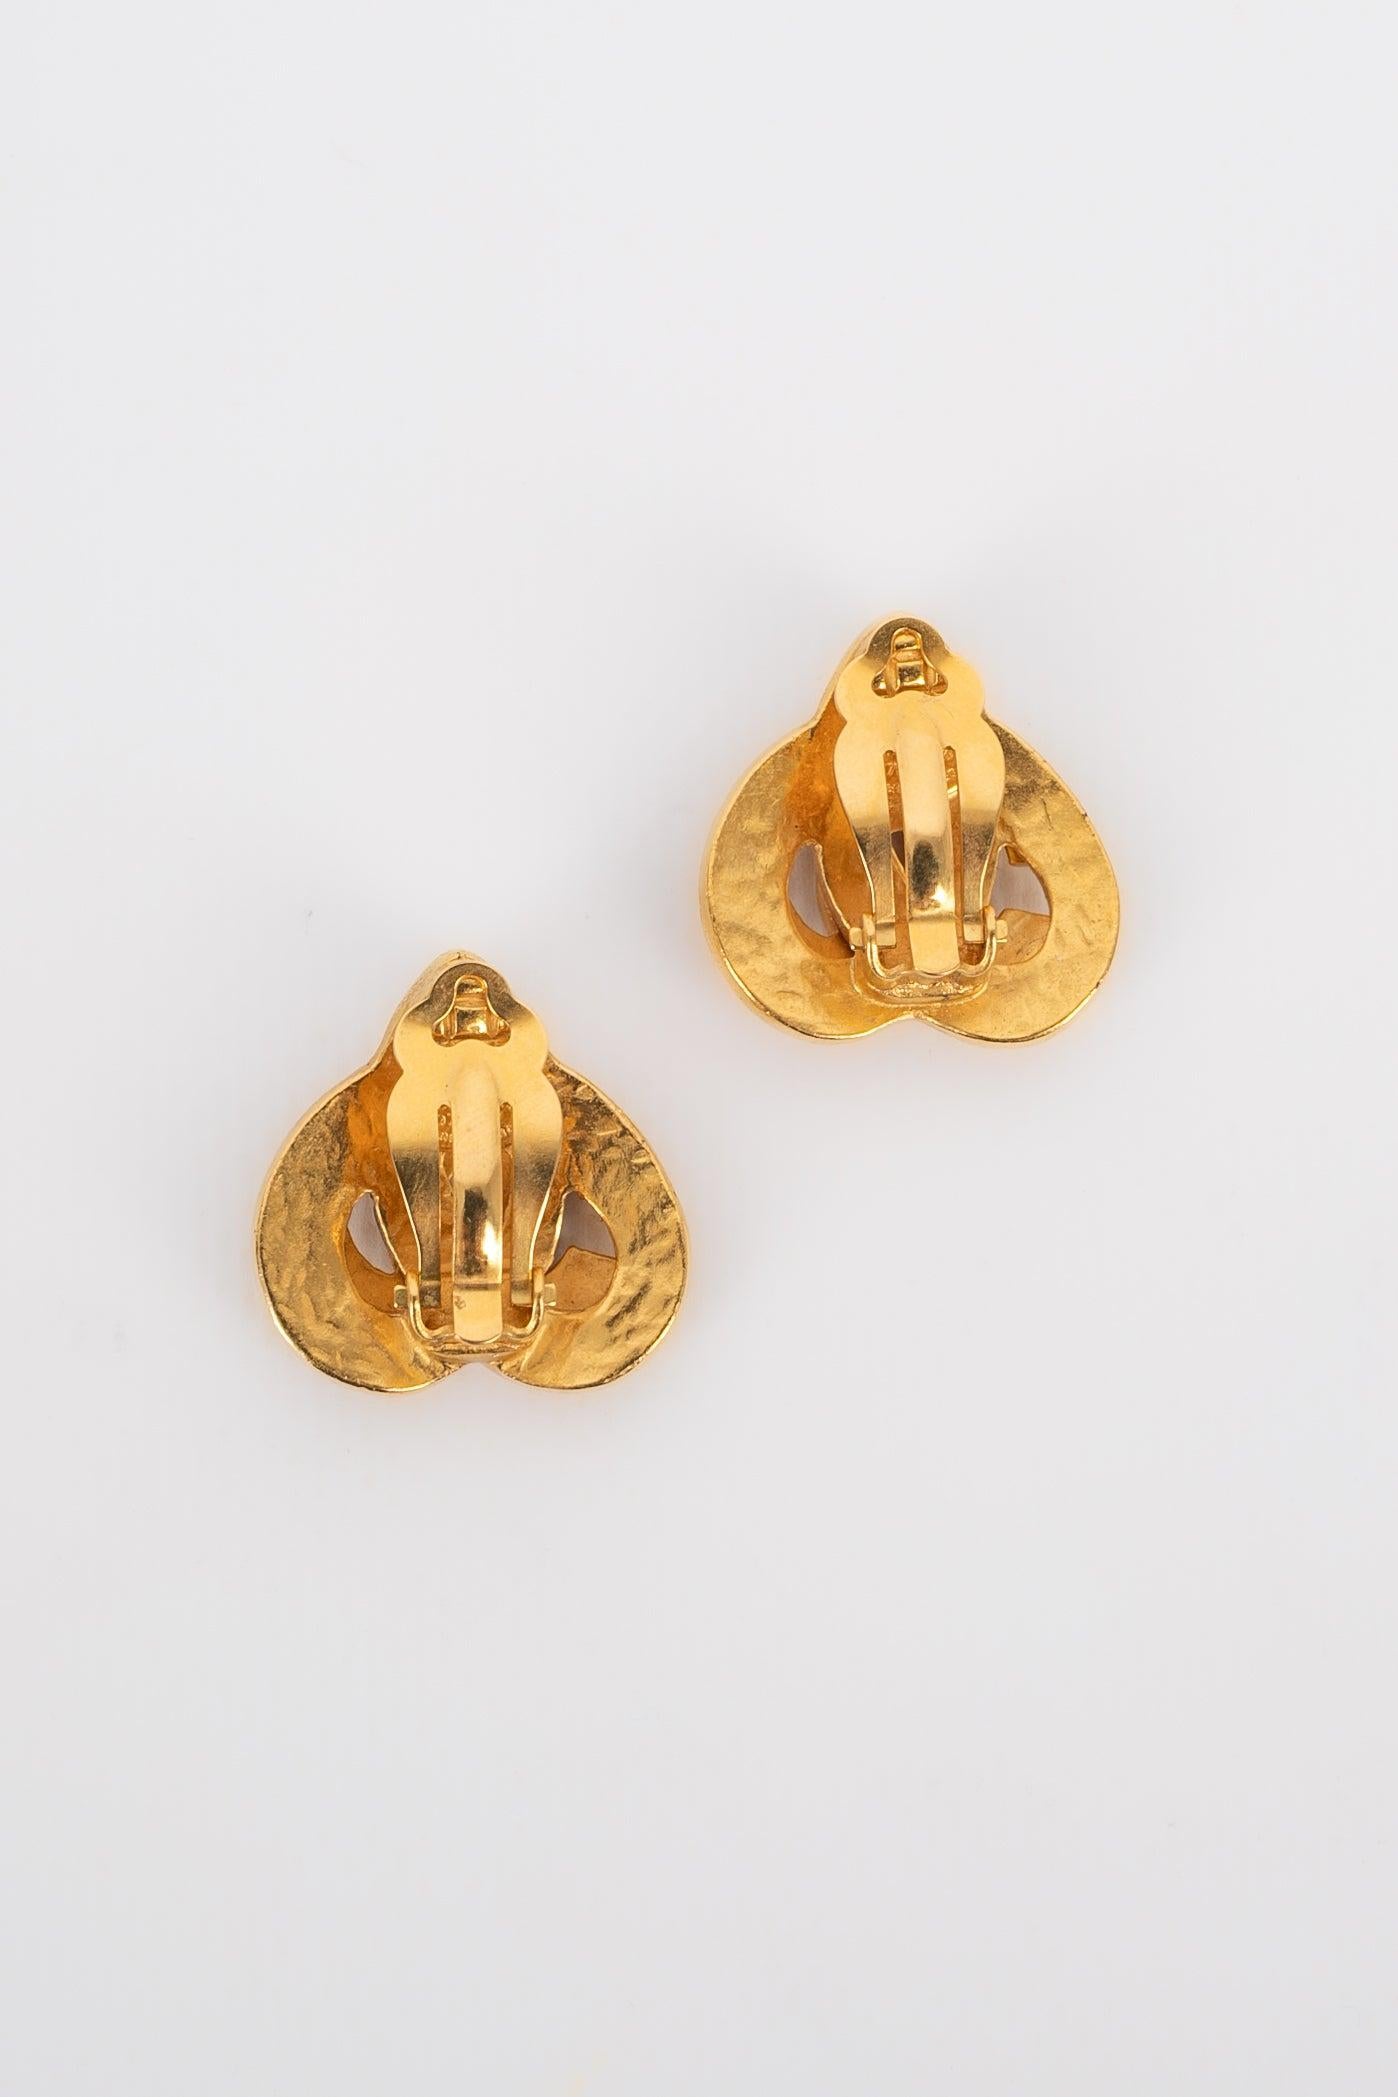 Chanel - (Made in France) Goldene Ohrringe aus Metall, die Herzen darstellen. Collection'S Frühling-Sommer 1997.
 
 Zusätzliche Informationen: 
 Zustand: Sehr guter Zustand
 Abmessungen: 2,8 cm x 2,5 cm
 Zeitraum: 20. Jahrhundert
 
 Sellers